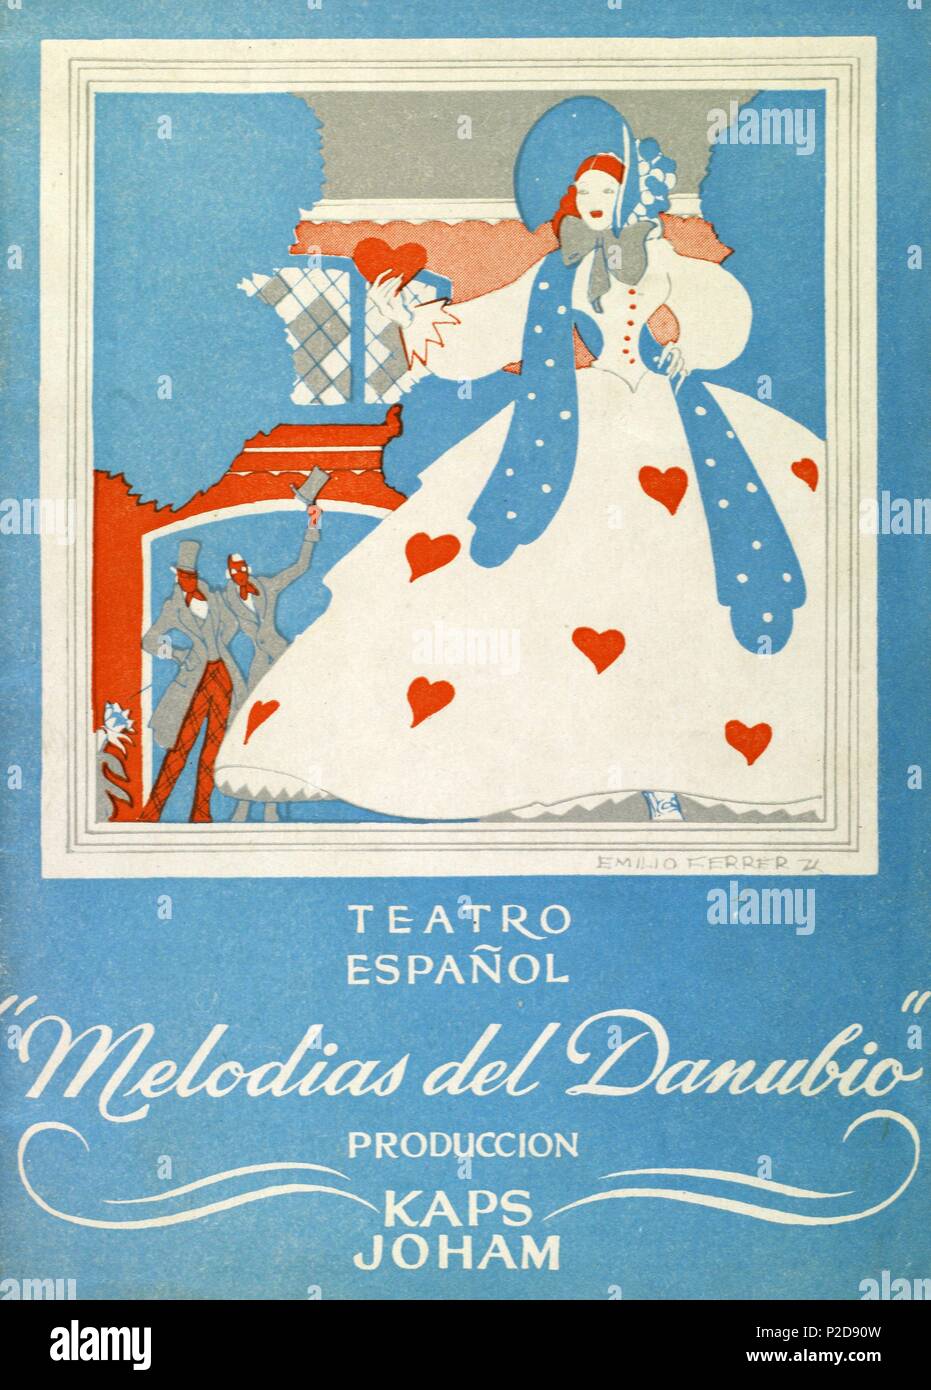 Programa de 'Melodías del Danubio' espectáculo de la compañía vianesa con dirección de Artur Kaps. Teatro Español, Barcelona, años 50. Stock Photo